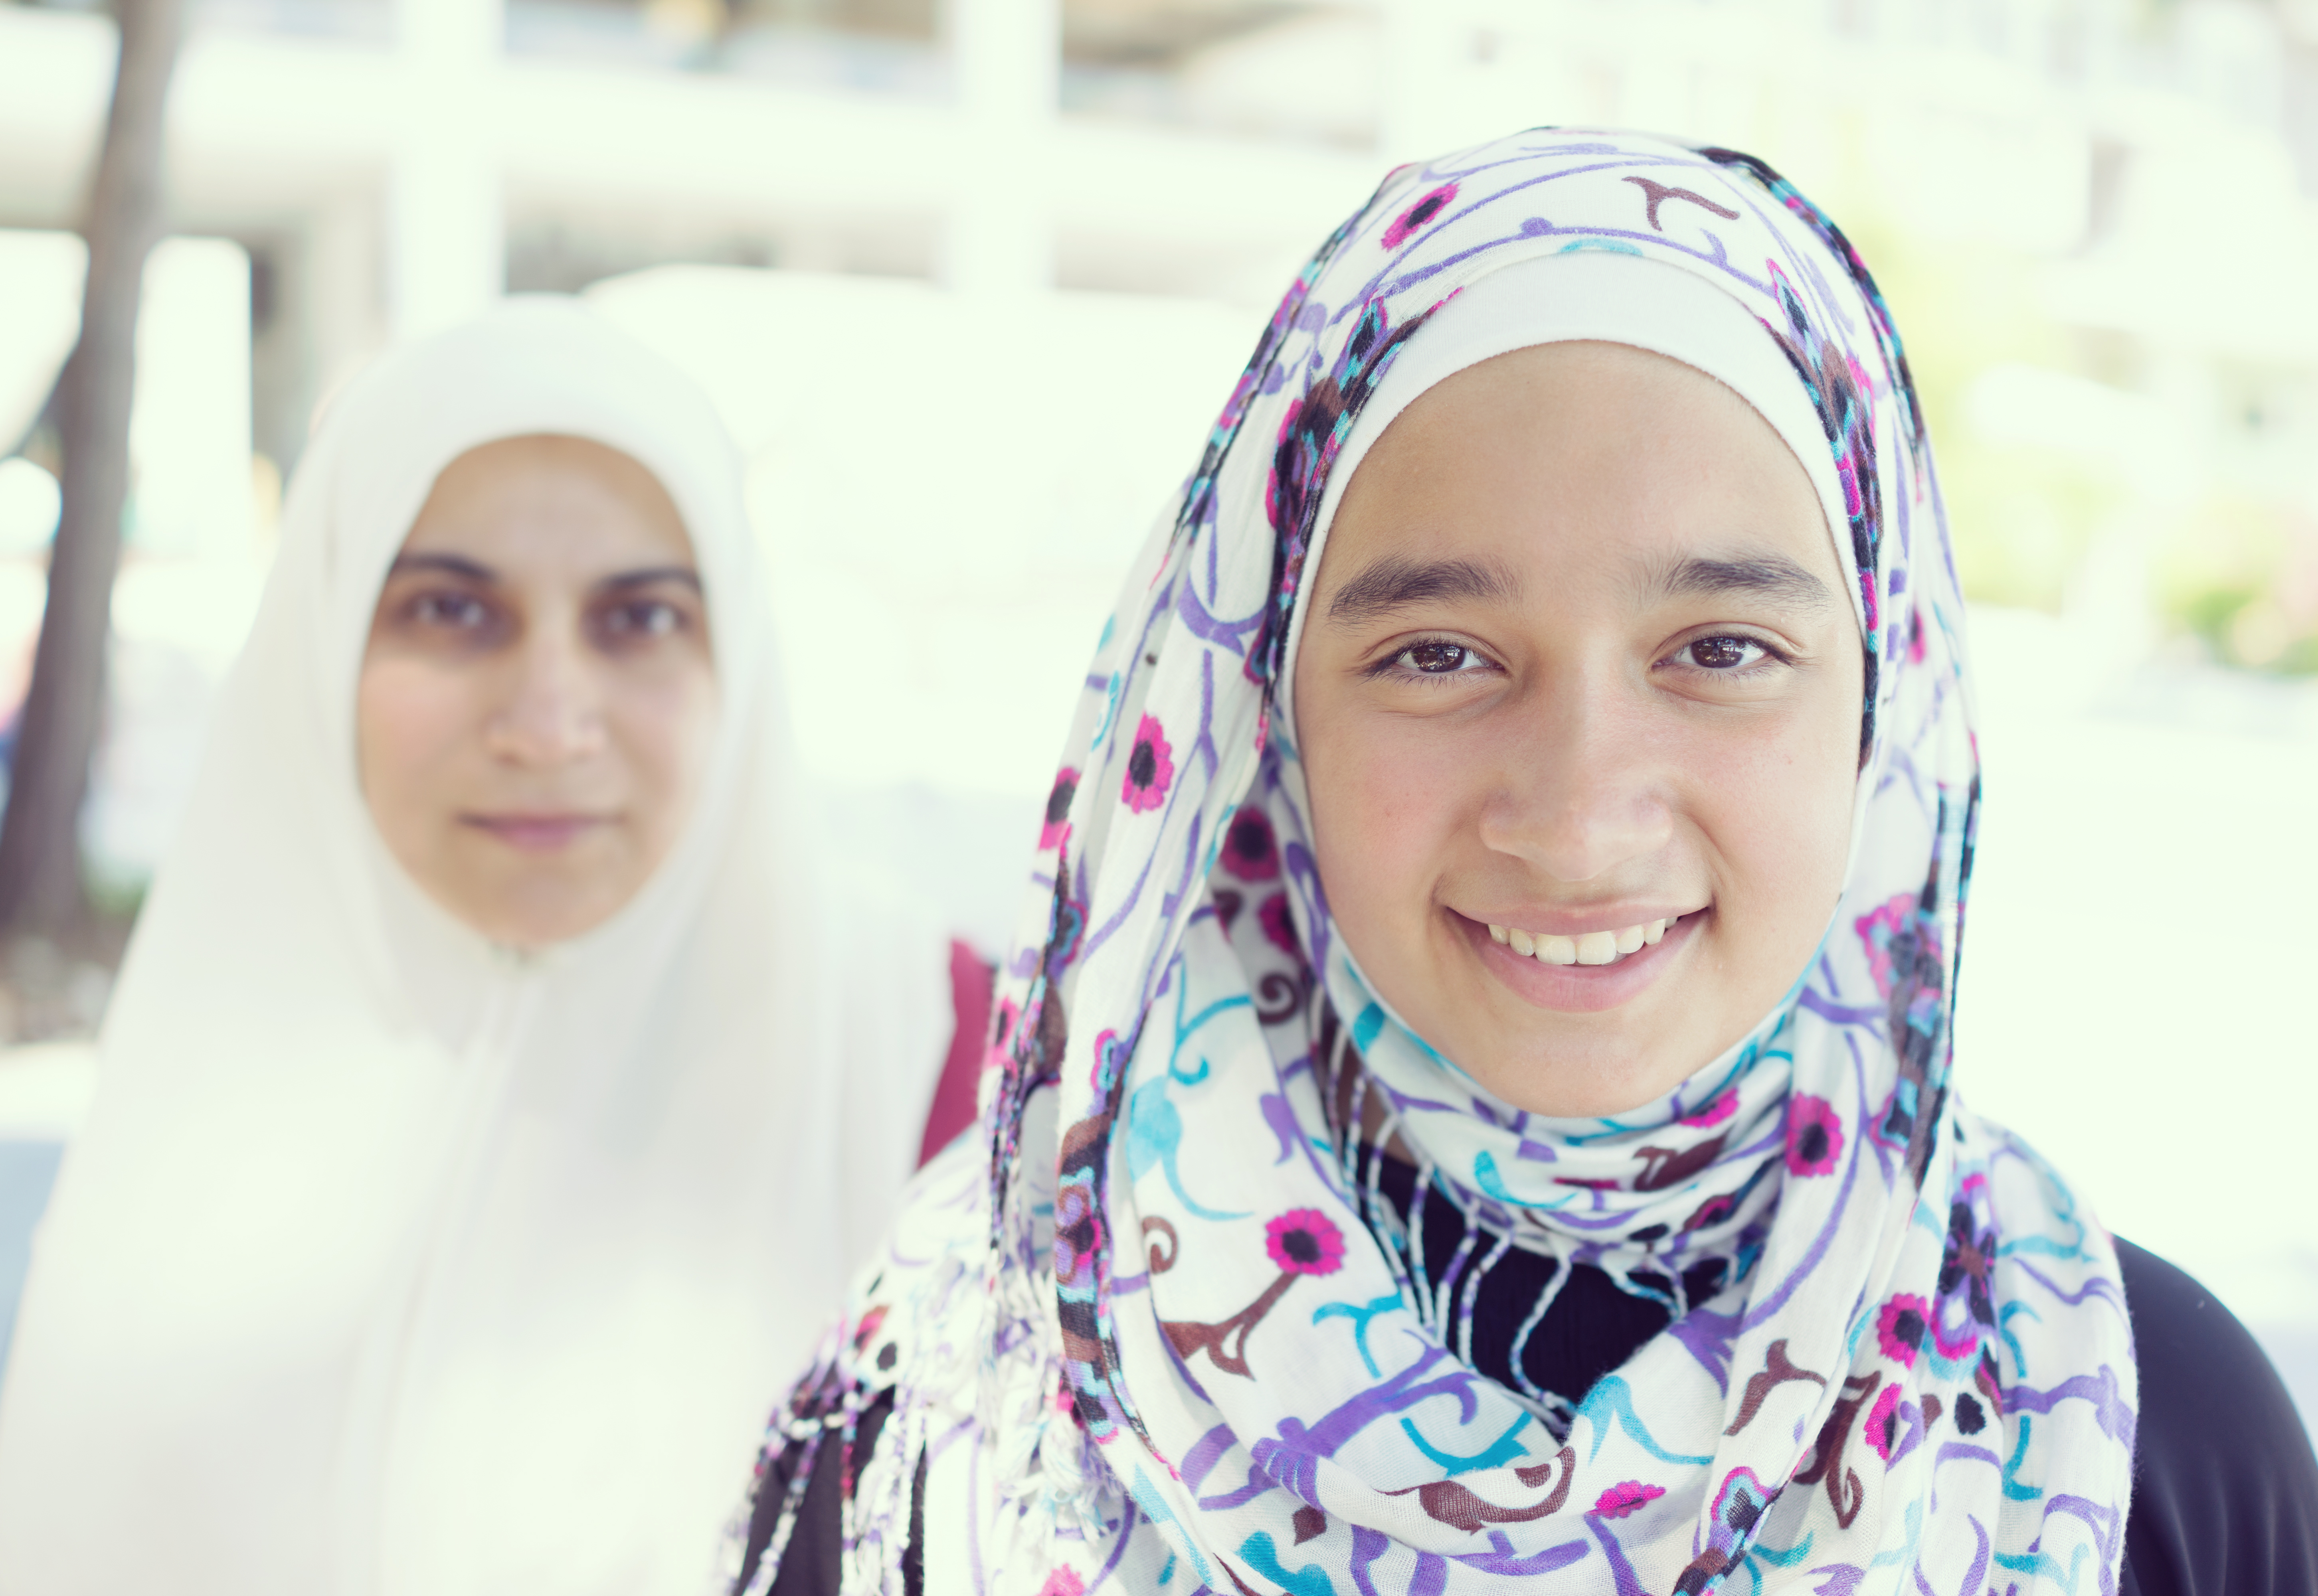 Two young women wearing hijab